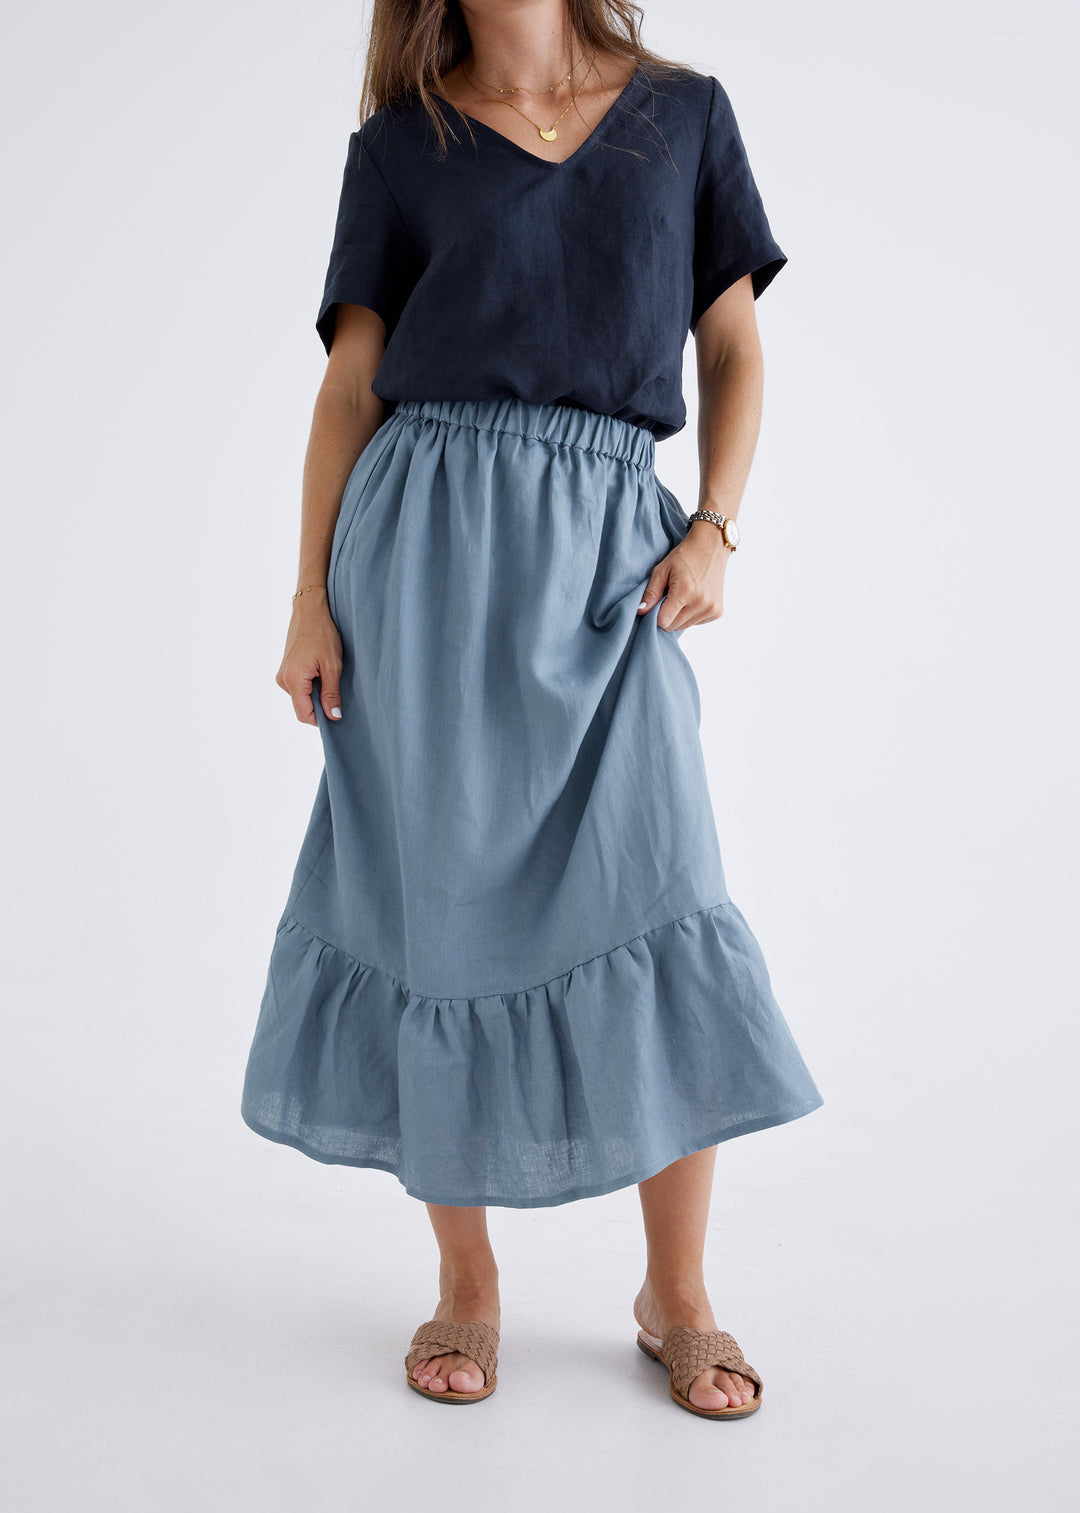 Luna Linen Skirt in Liberty Blue